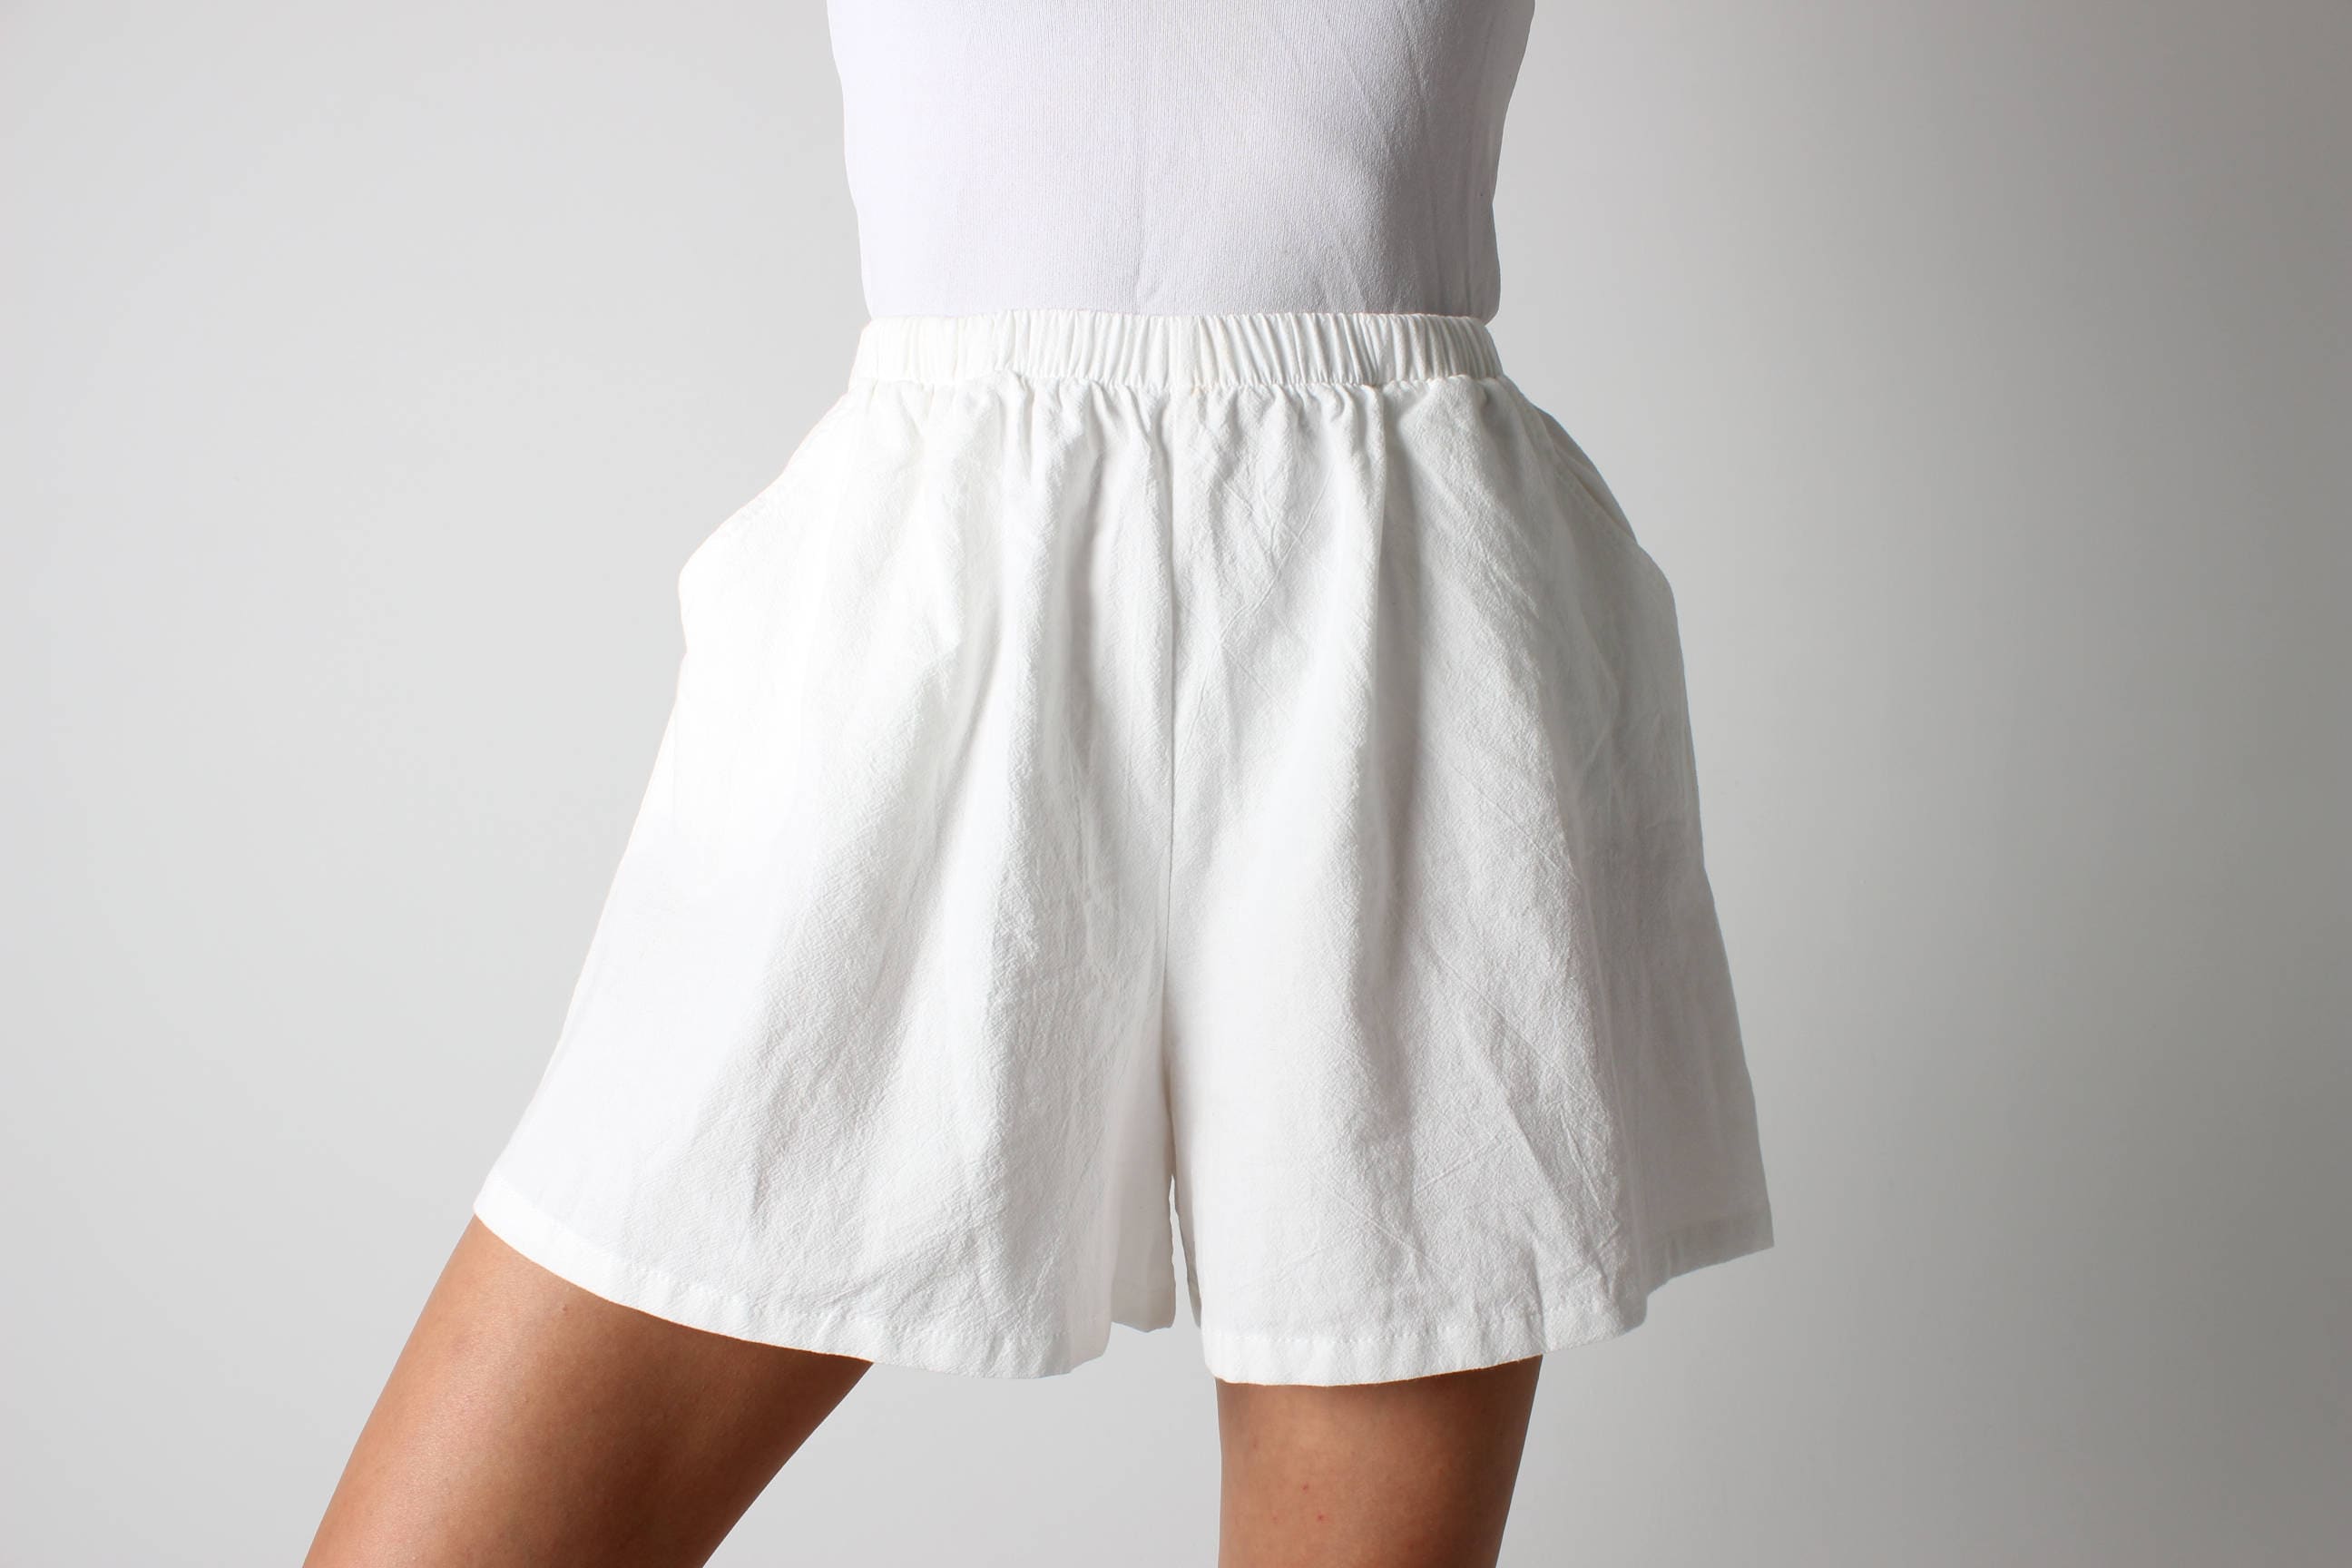 CORA Linen Shorts / High Waisted Linen Shorts / Paper Bag Beach Shorts /  Handmade Clothing for Women 